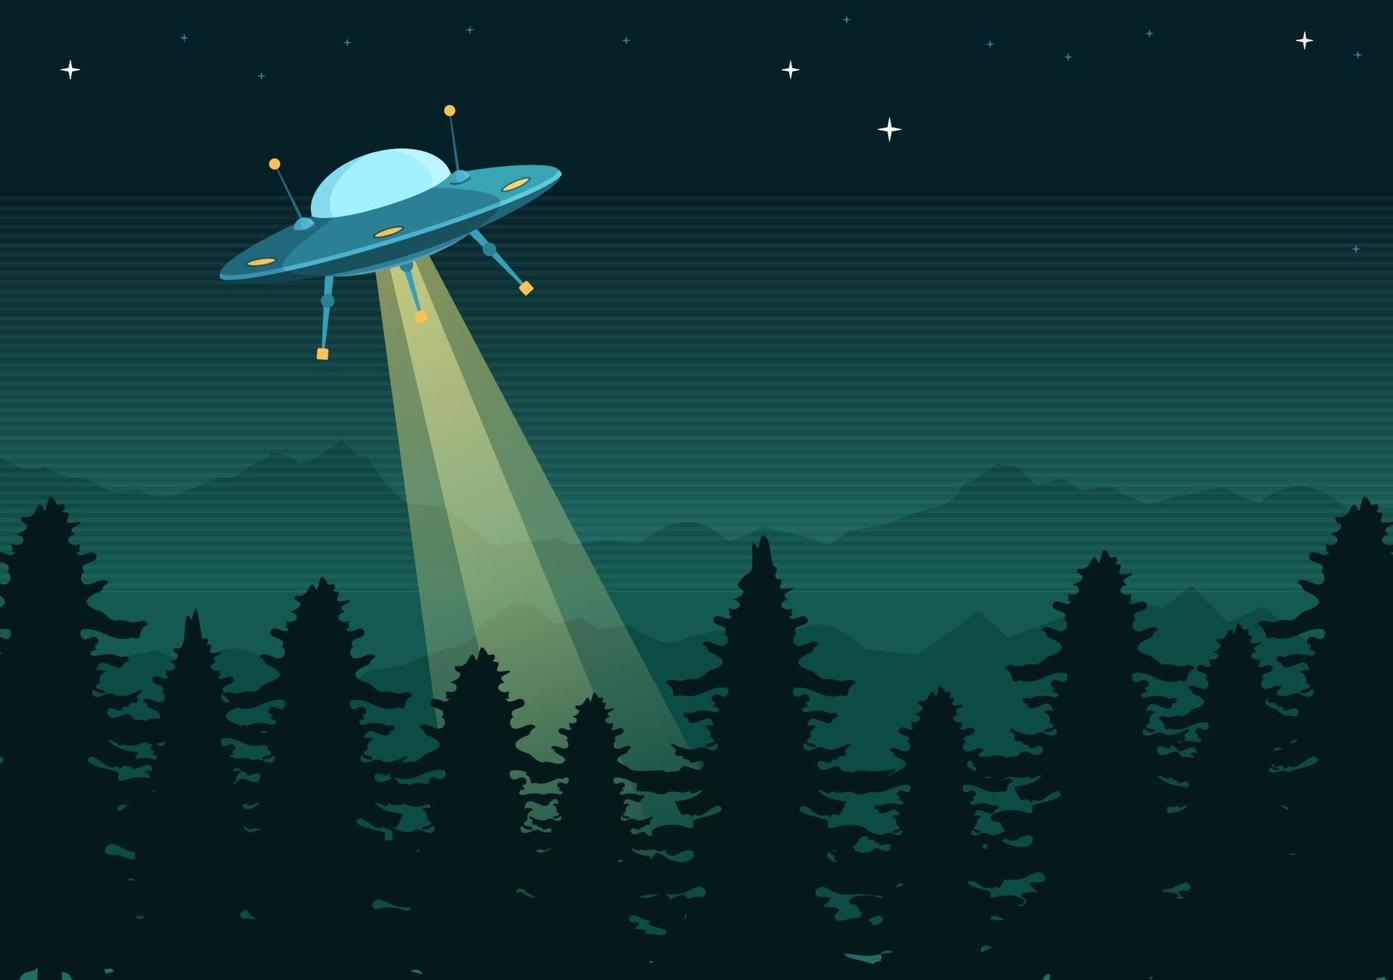 nave espacial voladora ovni con rayos de luz en el cielo vista nocturna de la ciudad y extraterrestre en ilustración de plantillas dibujadas a mano de dibujos animados planos vector